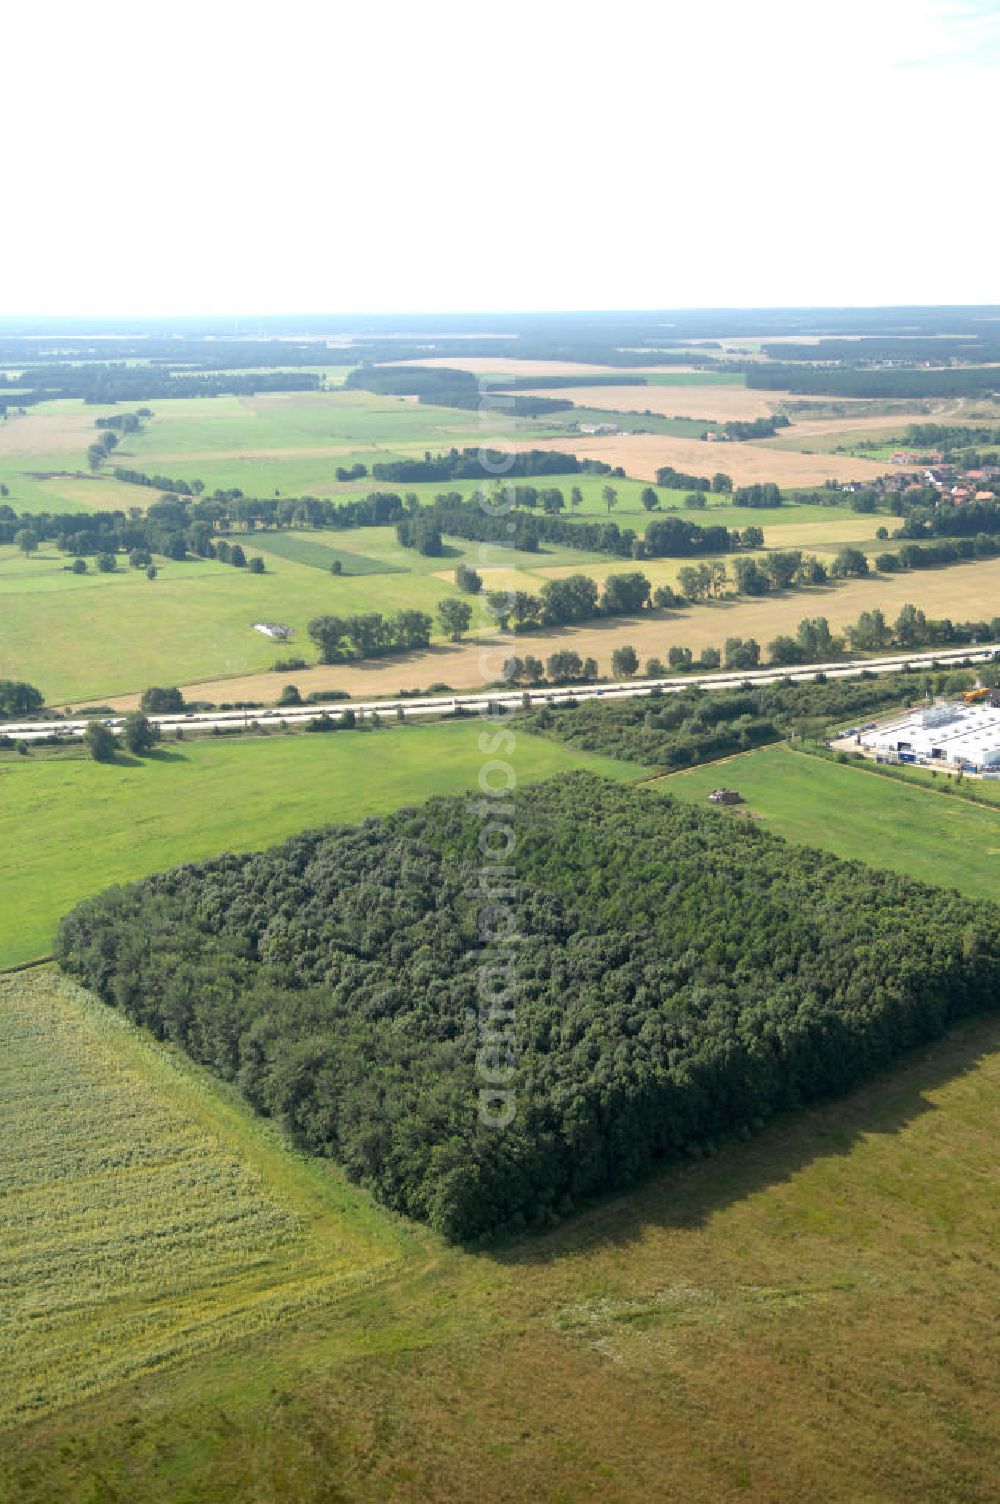 Linthe from above - Blick auf ein quadratisch angeordnetes Mischwaldareal / Wald / Waldinsel / Waldfläche an der A9 in der Nähe des Gewerbegebiets Linthe in Brandenburg. Die Anordnung der Bäume sieht aus wie ein Quadrat.